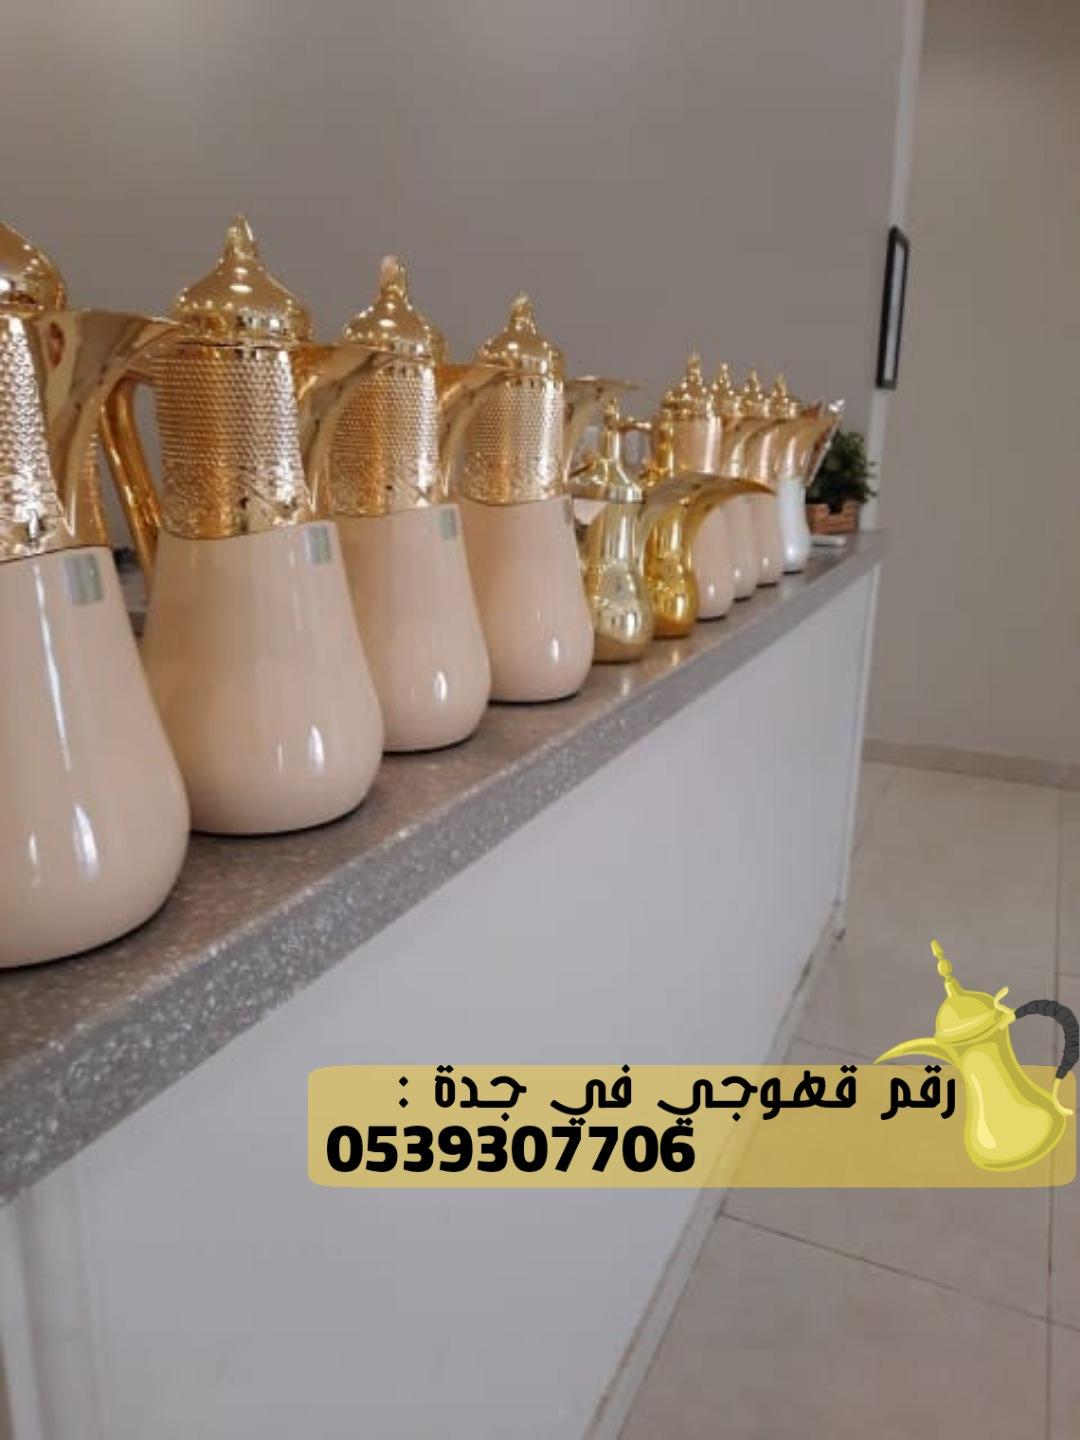 قهوجي و صباب قهوة في جدة, 0539307706  162017756